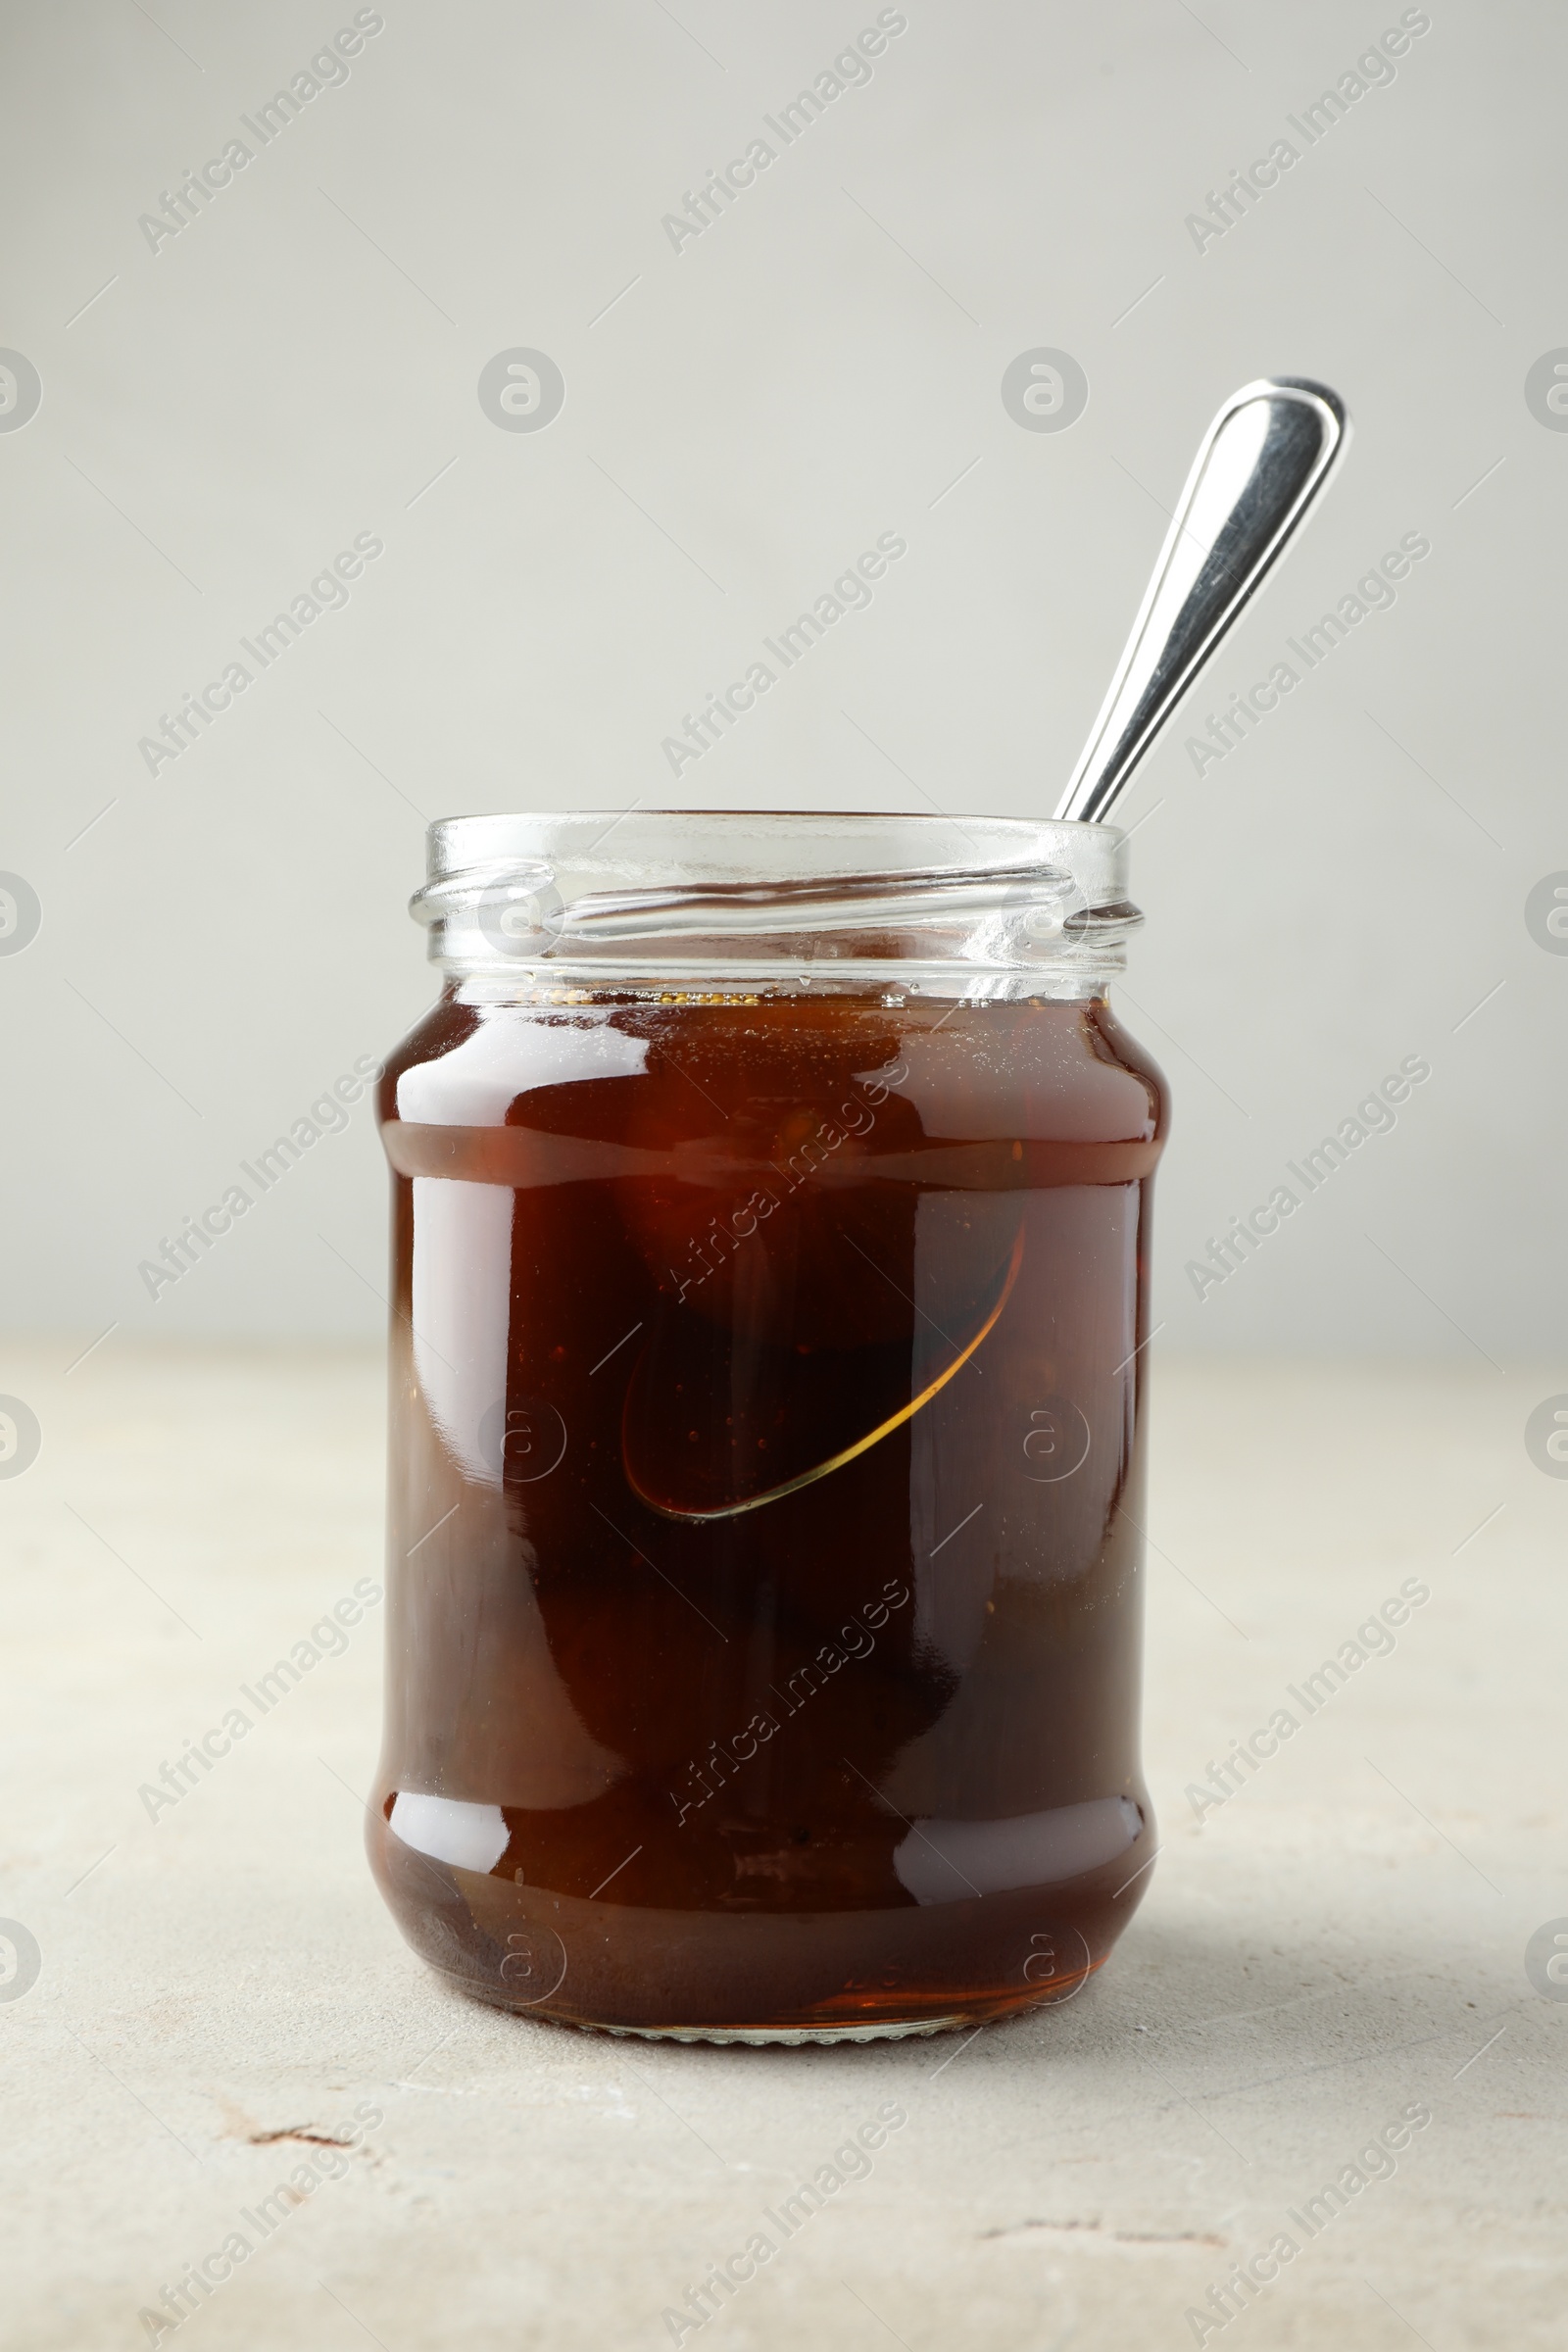 Photo of Jar of tasty sweet fig jam on light table